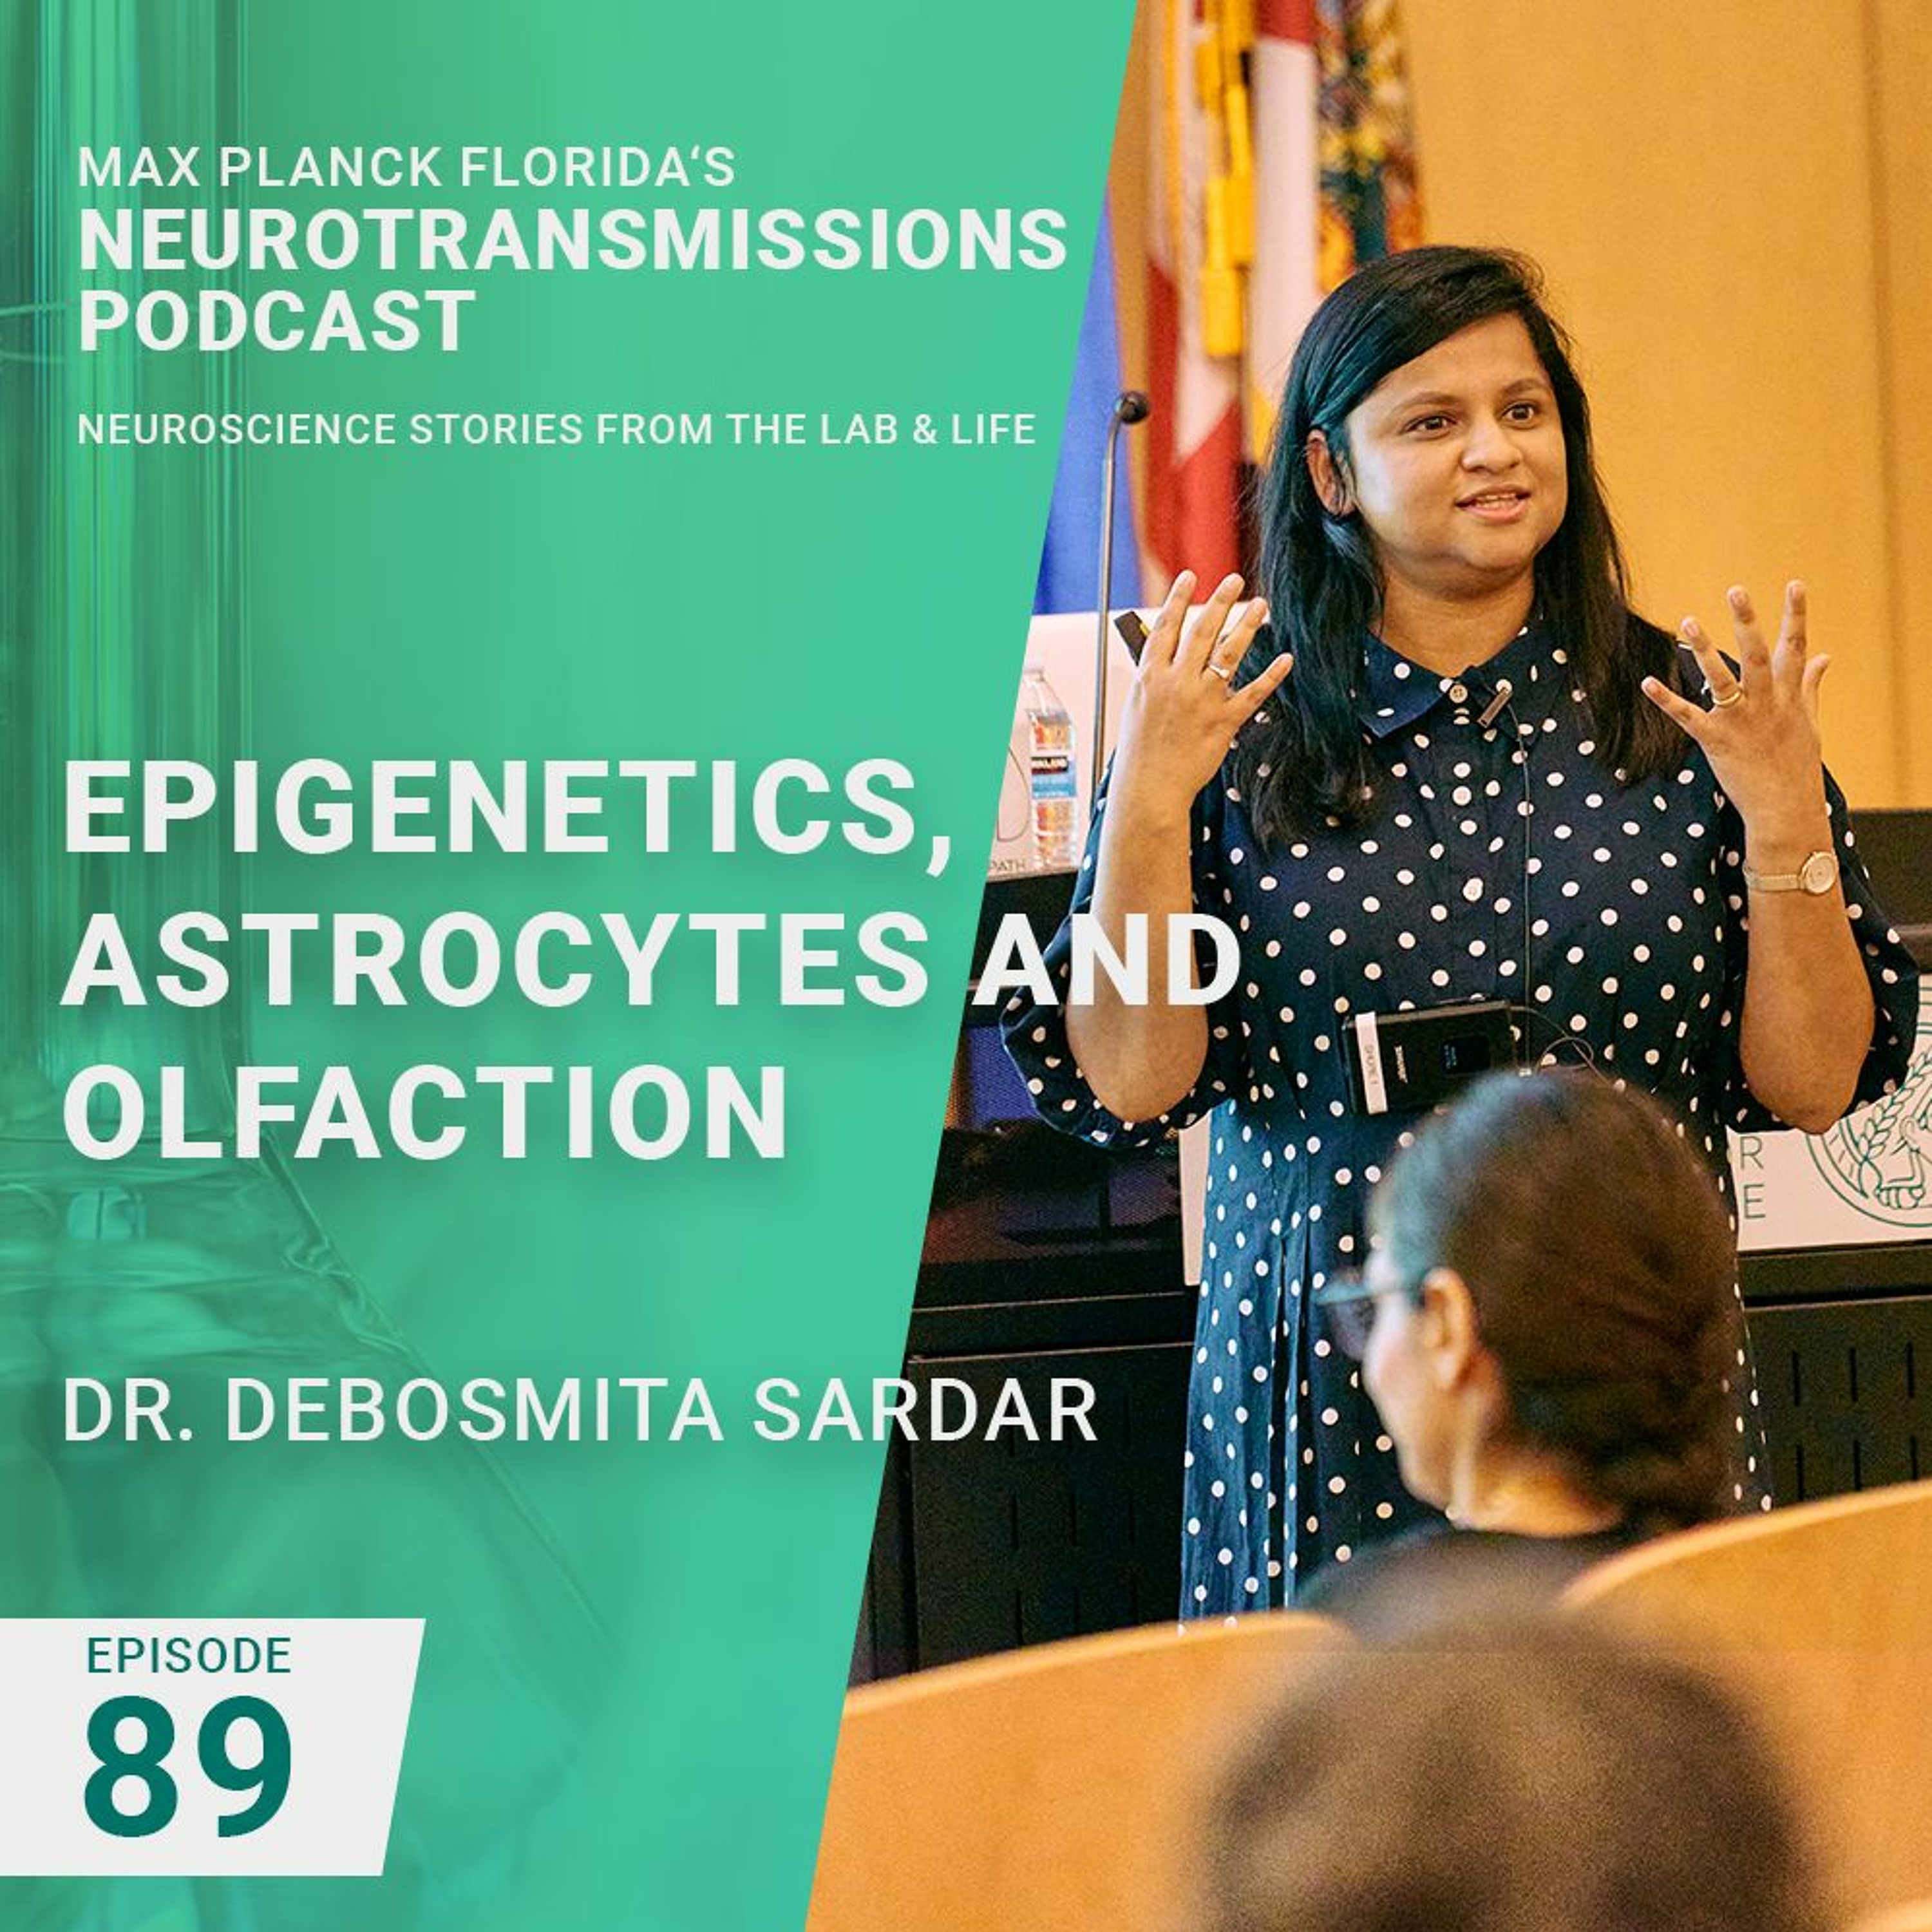 89. Epigenetics, Astrocytes And Olfaction With Dr. Debosmita Sardar